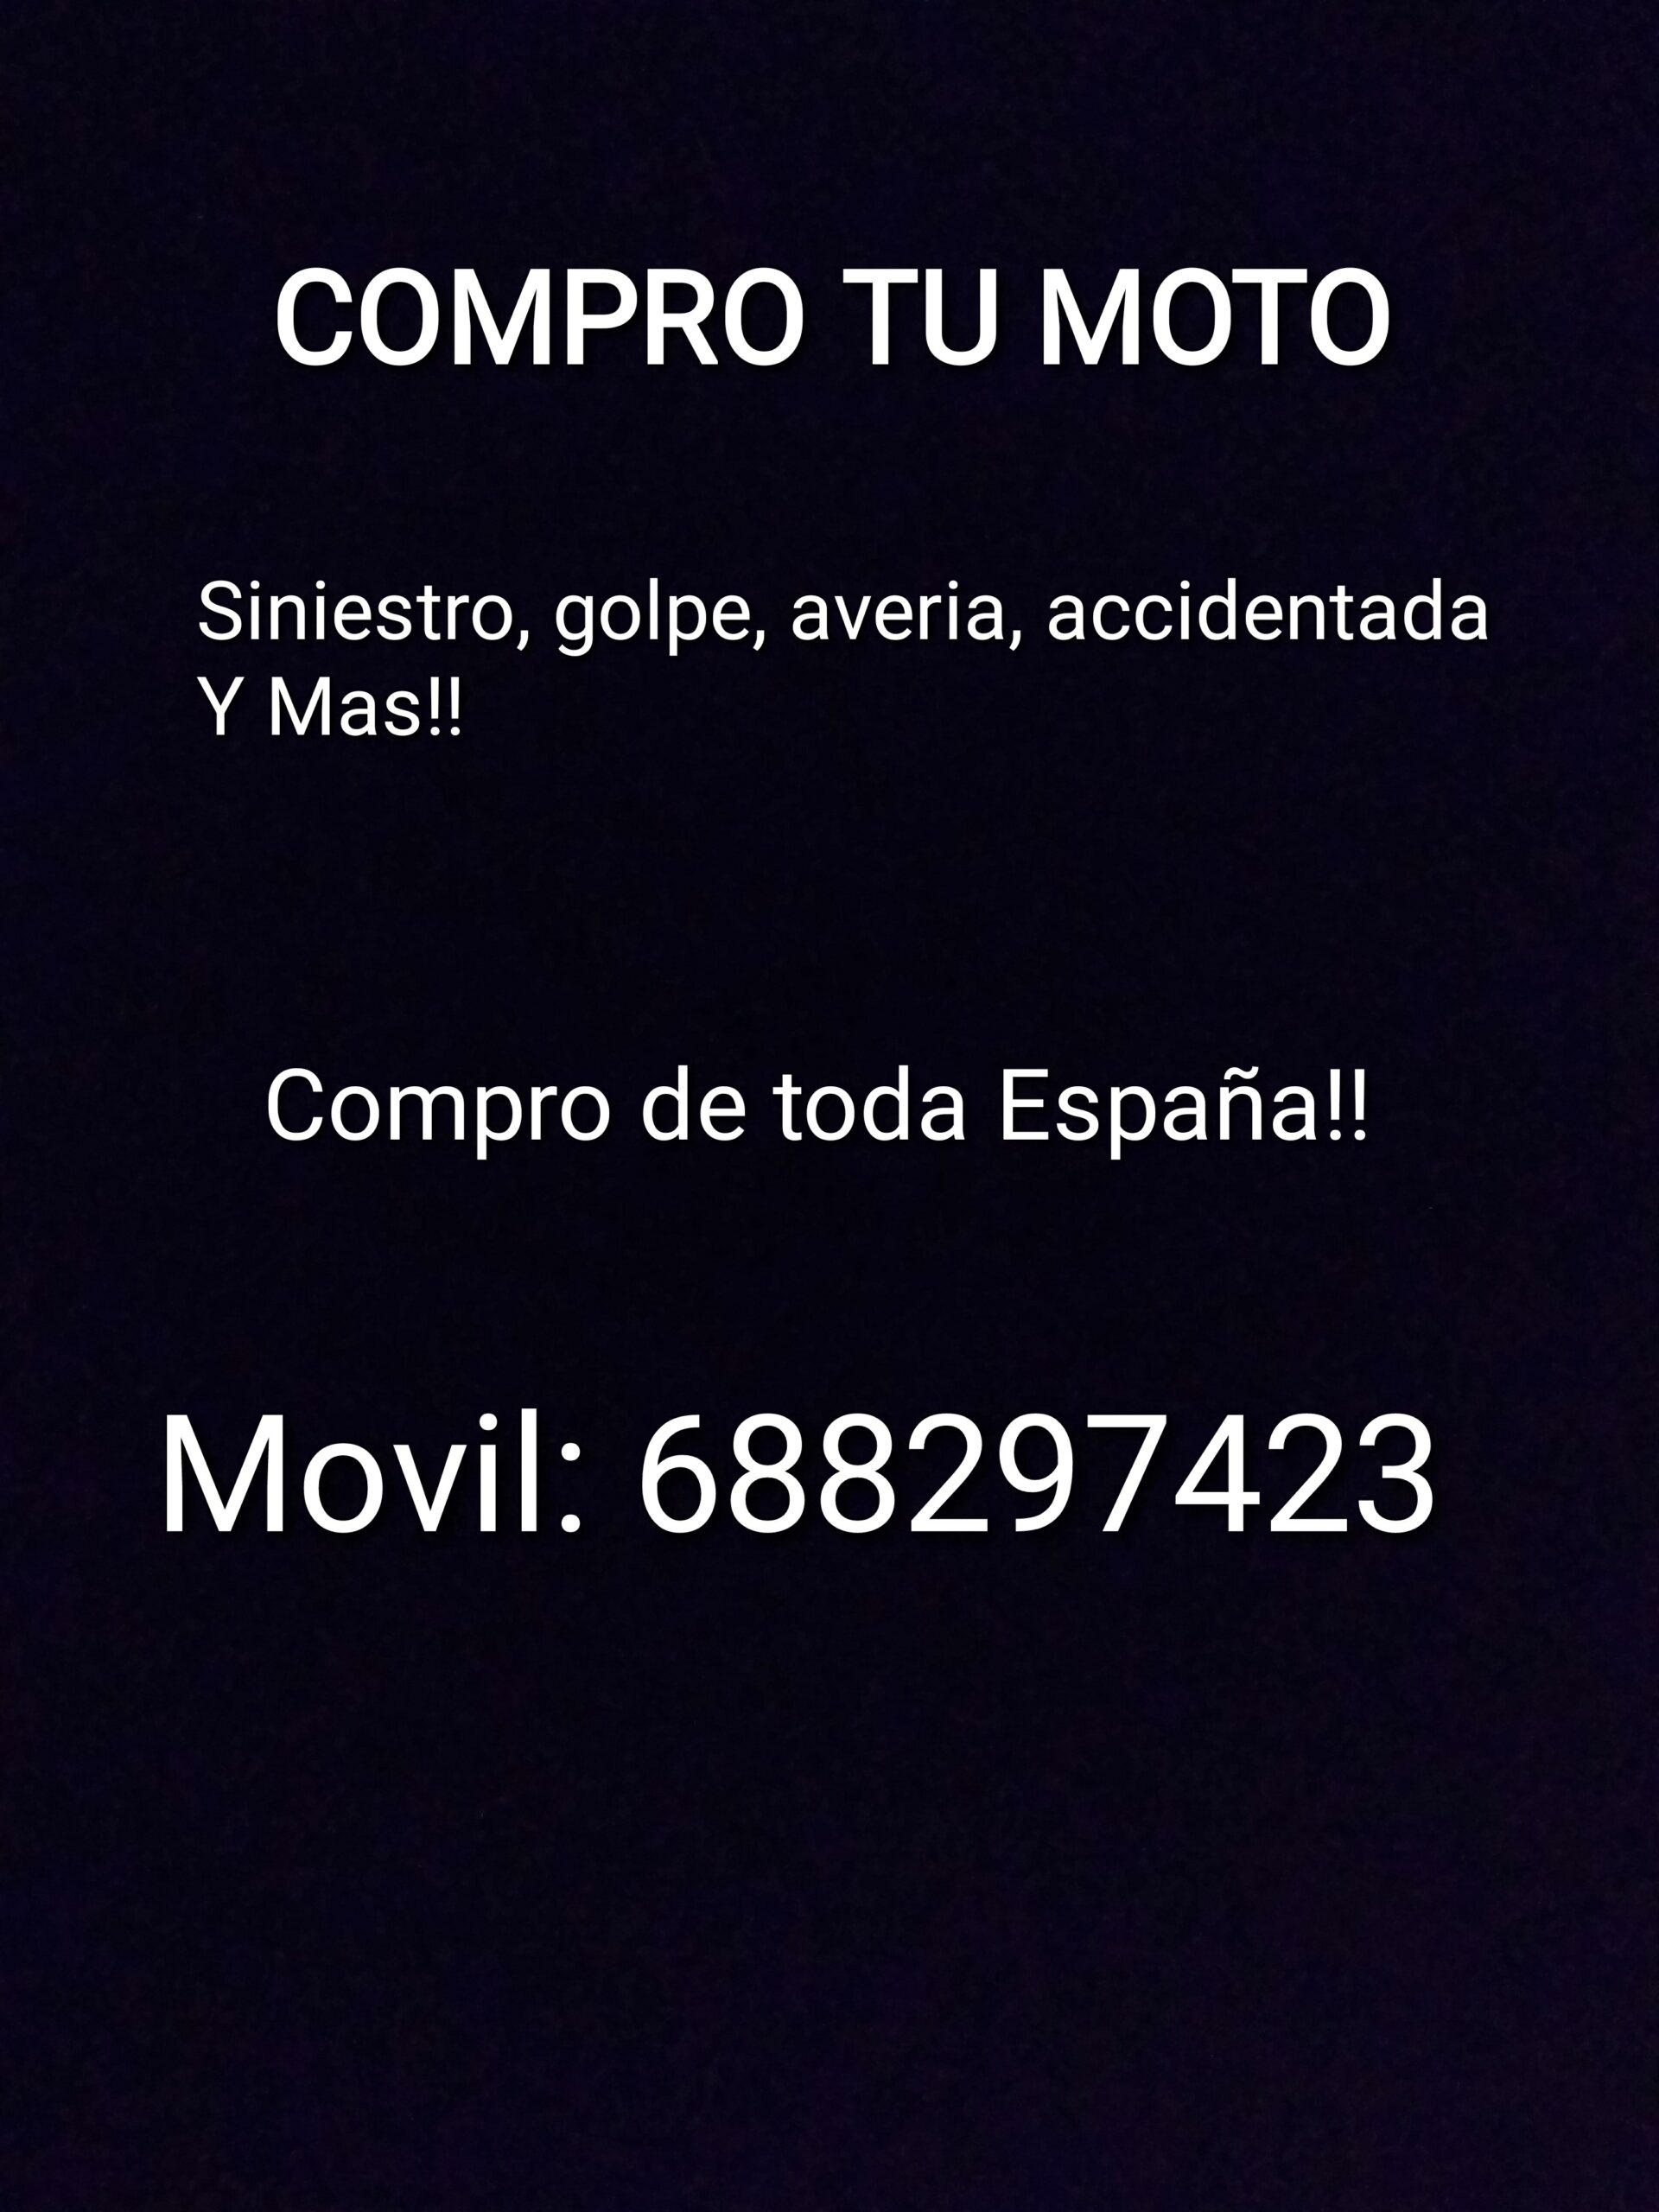 Compro Motos Es España:siniestro,accidentada,averiada,daños,golpe Y Mas 688297423